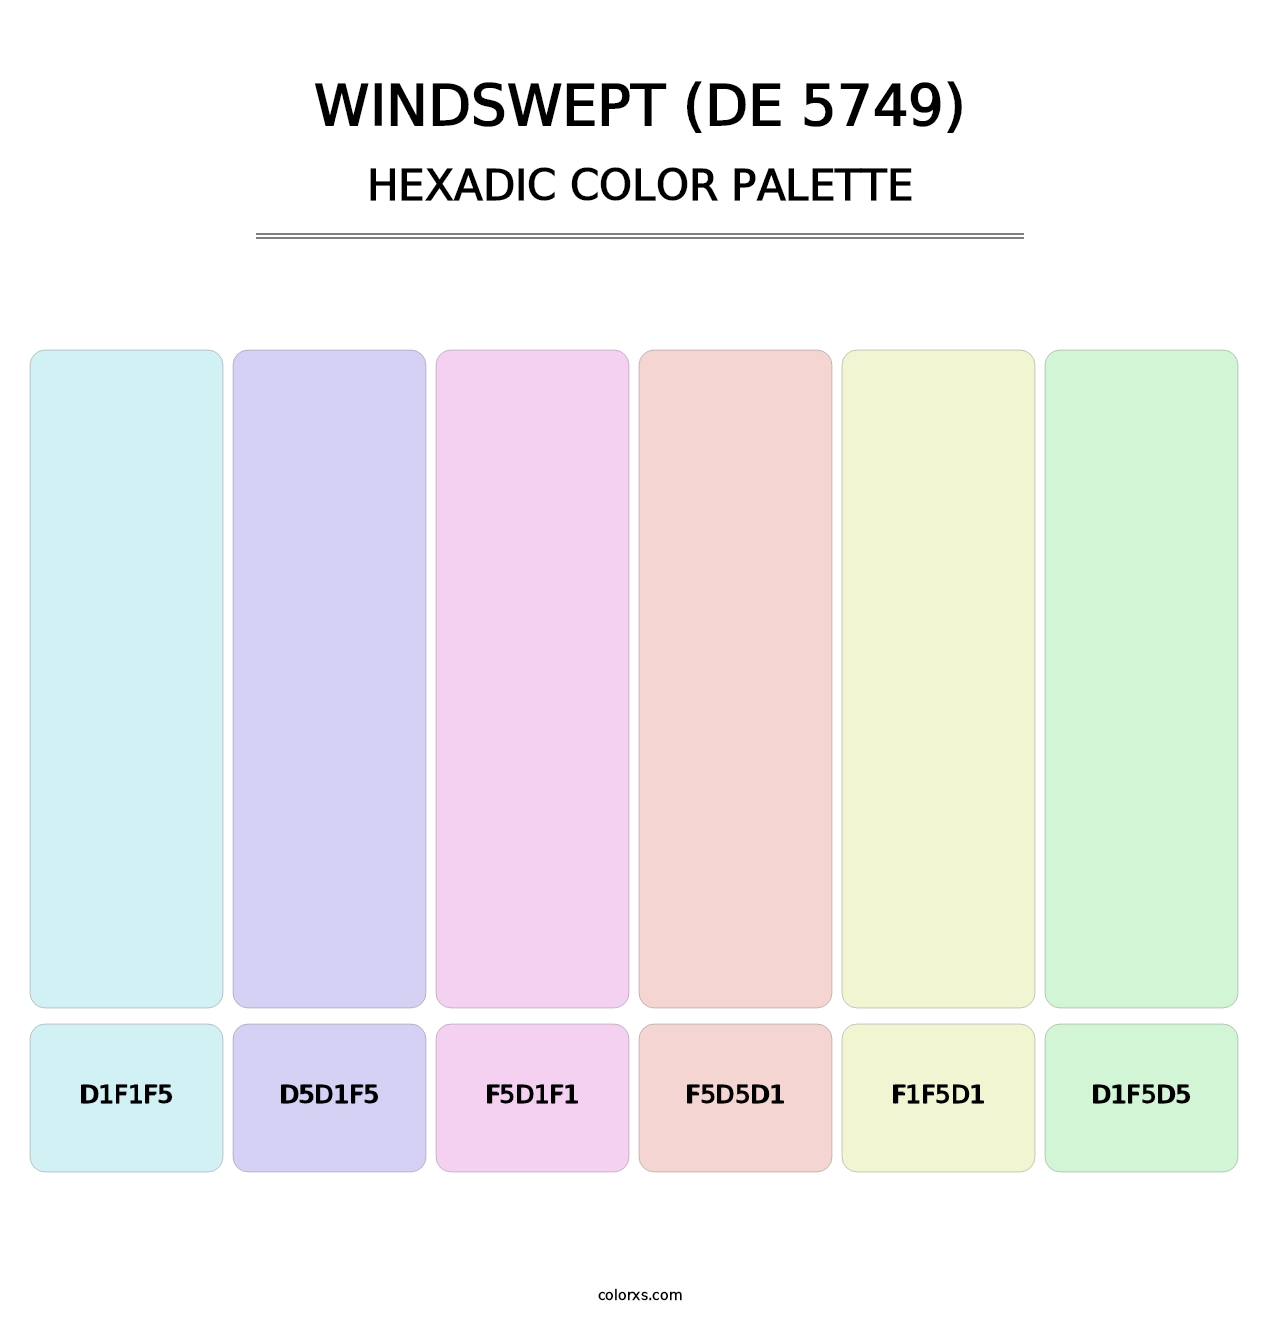 Windswept (DE 5749) - Hexadic Color Palette